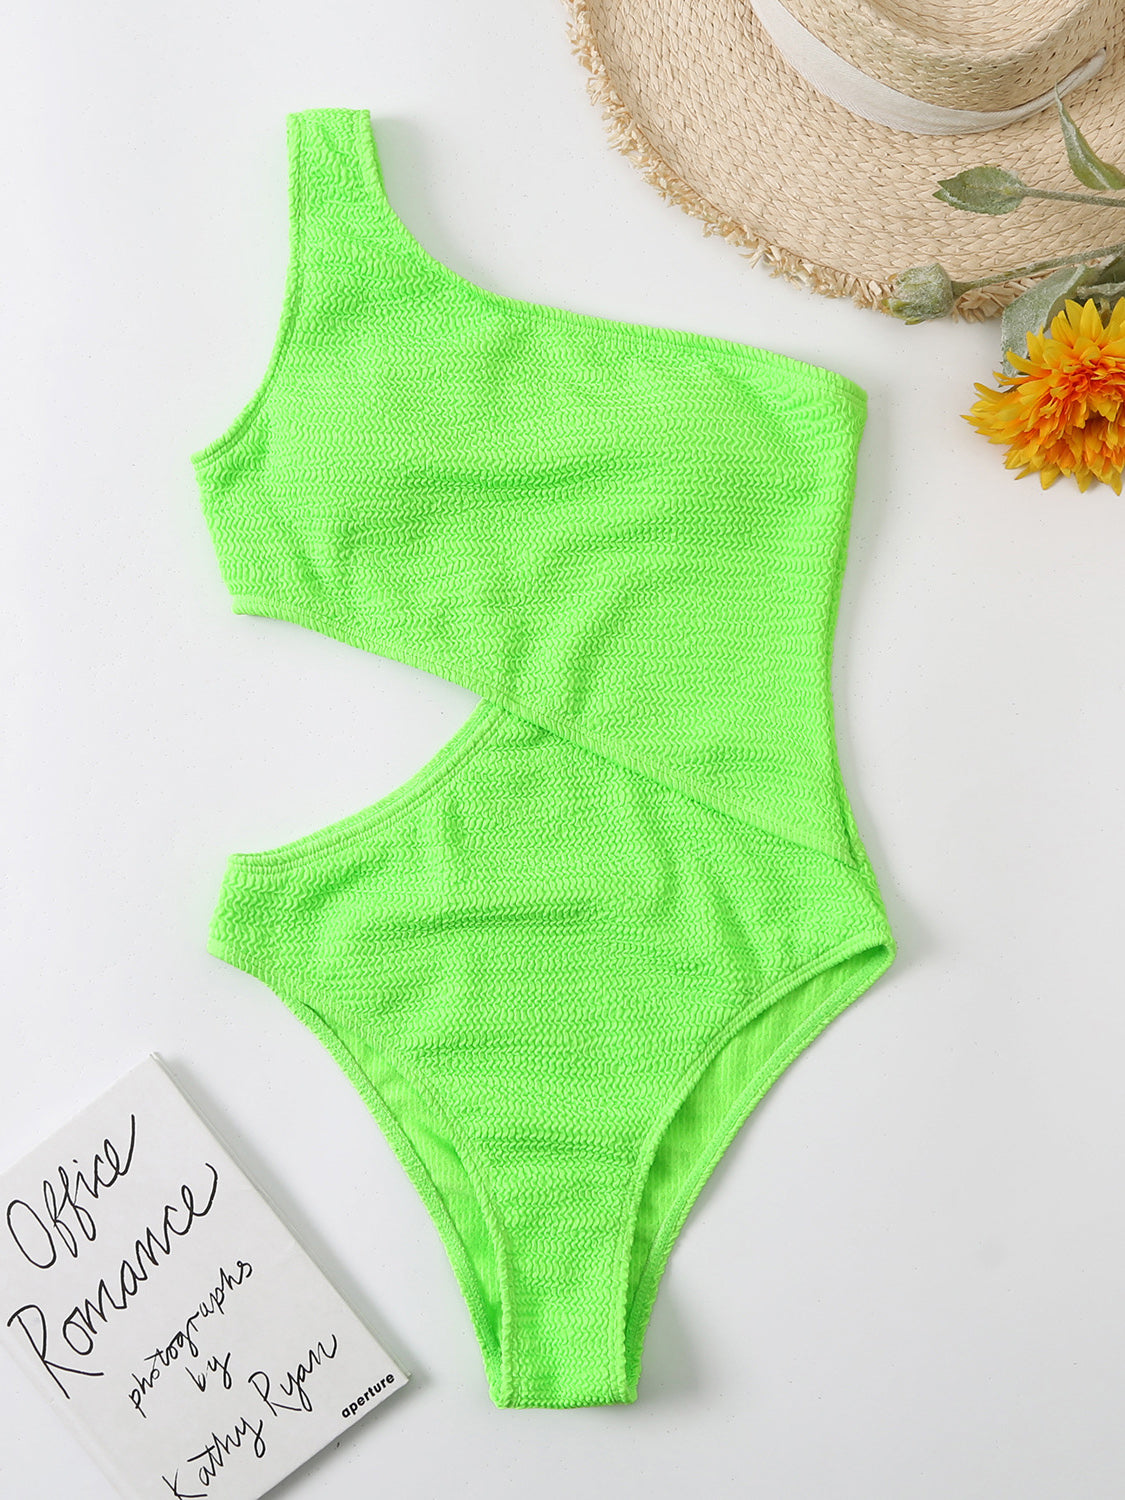 TEEK - Cutout One Shoulder One-Piece Swimsuit SWIMWEAR TEEK Trend Neon Green S 